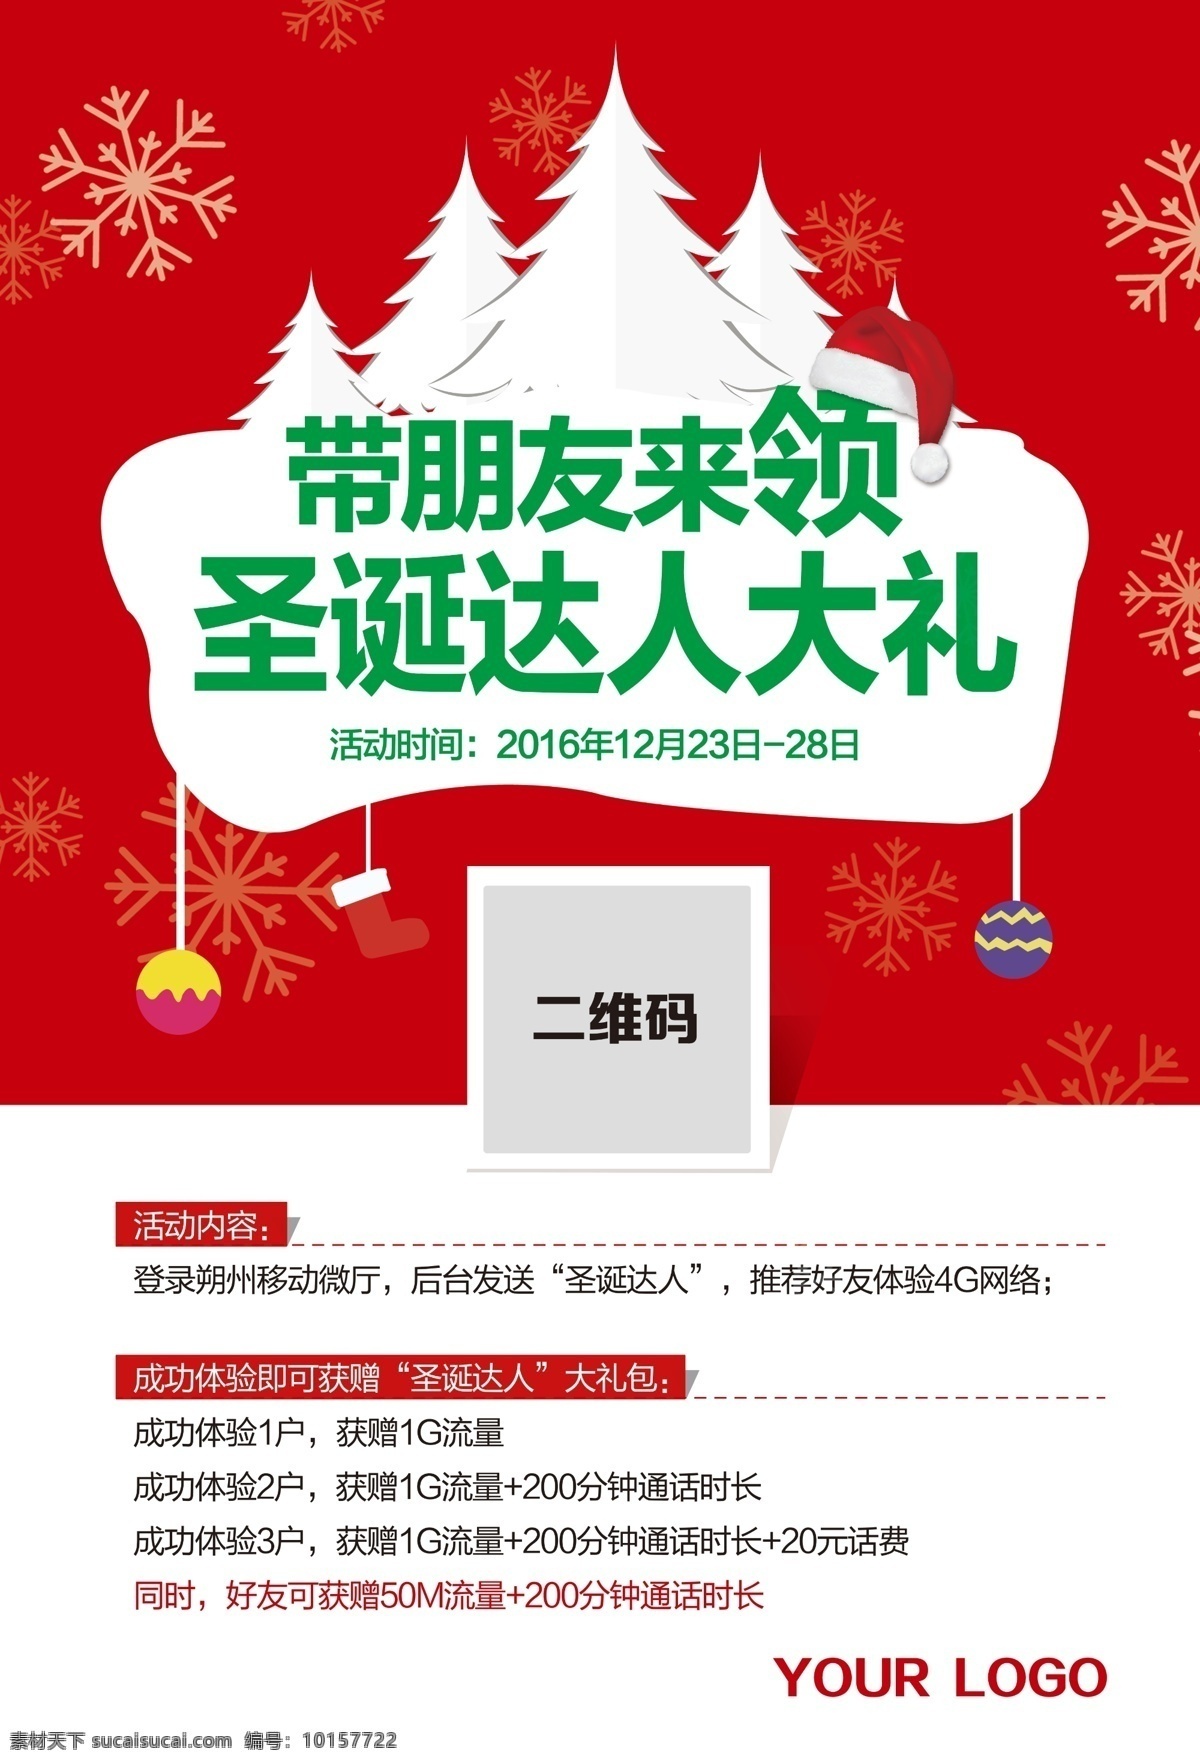 中国移动 圣诞节 圣诞达人 流量海报 流量 海报 体验用户